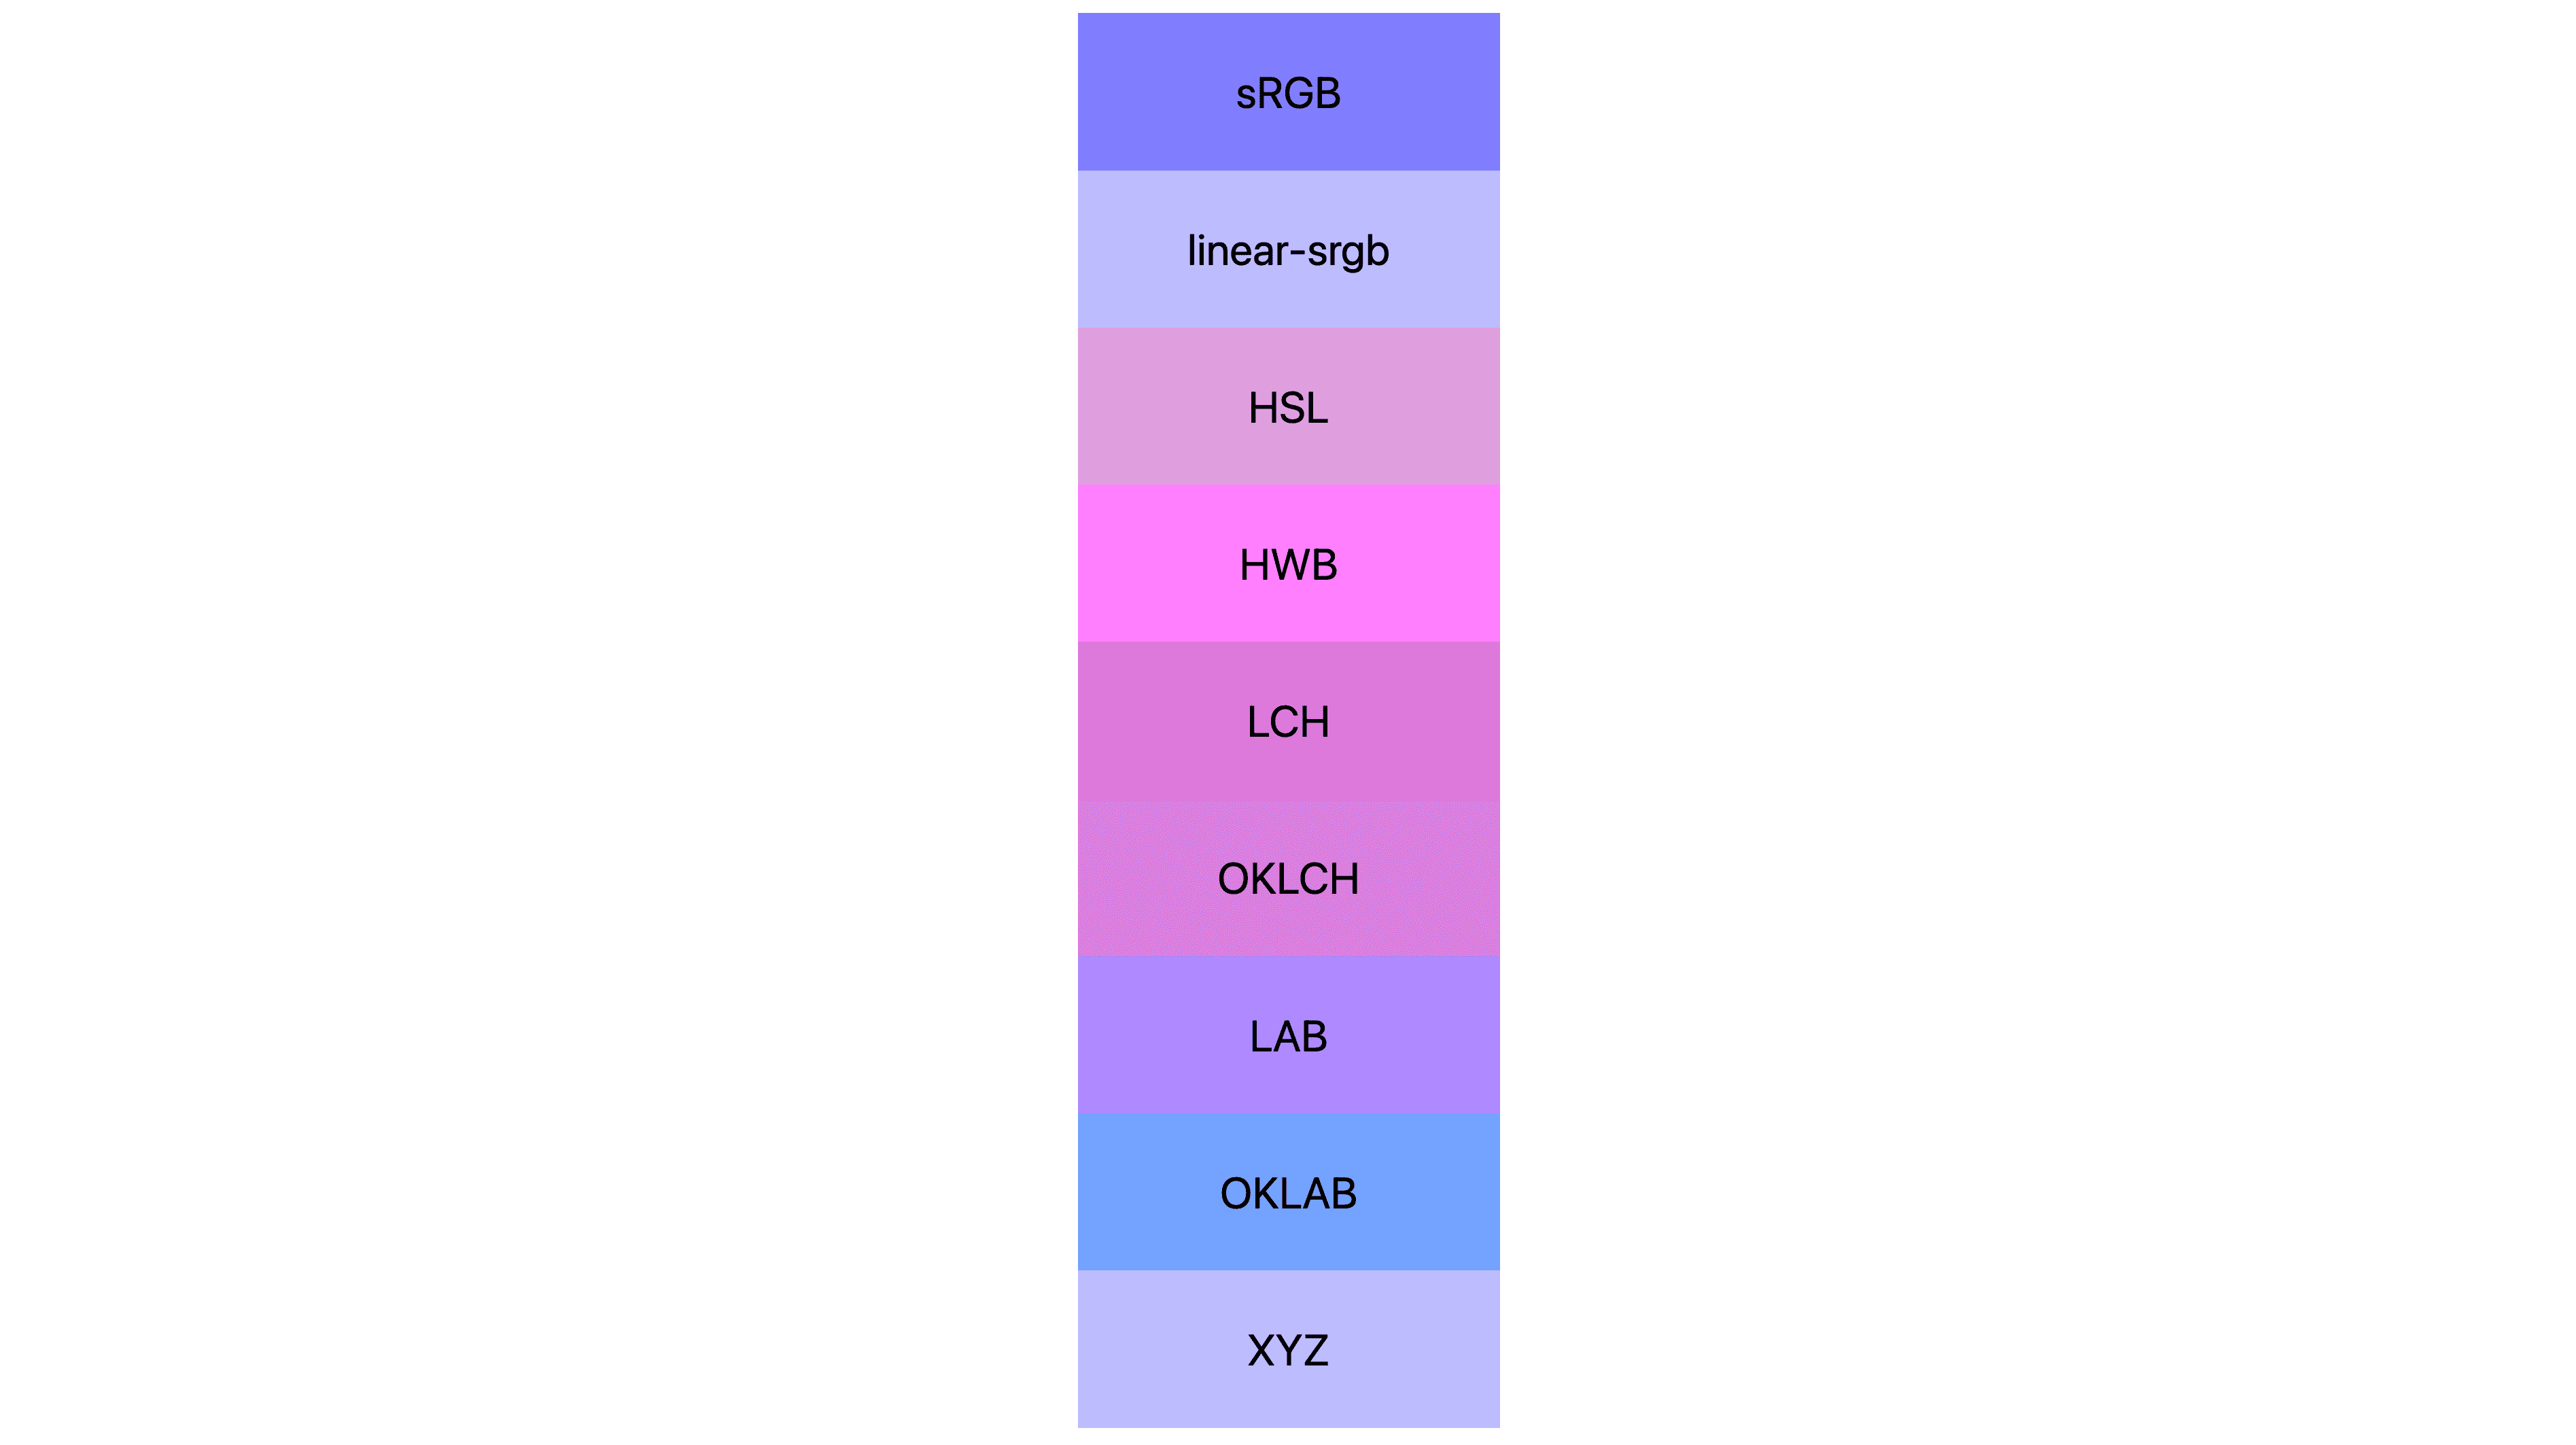 Her biri farklı sonuçlara sahip olan 7 renk alanının (srgb, linear-srgb, lch, oklch, lab, oklab, xyz) her biri farklı sonuçlar gösteriyor. Çoğu pembe veya mor, bazıları aslında hâlâ mavidir.